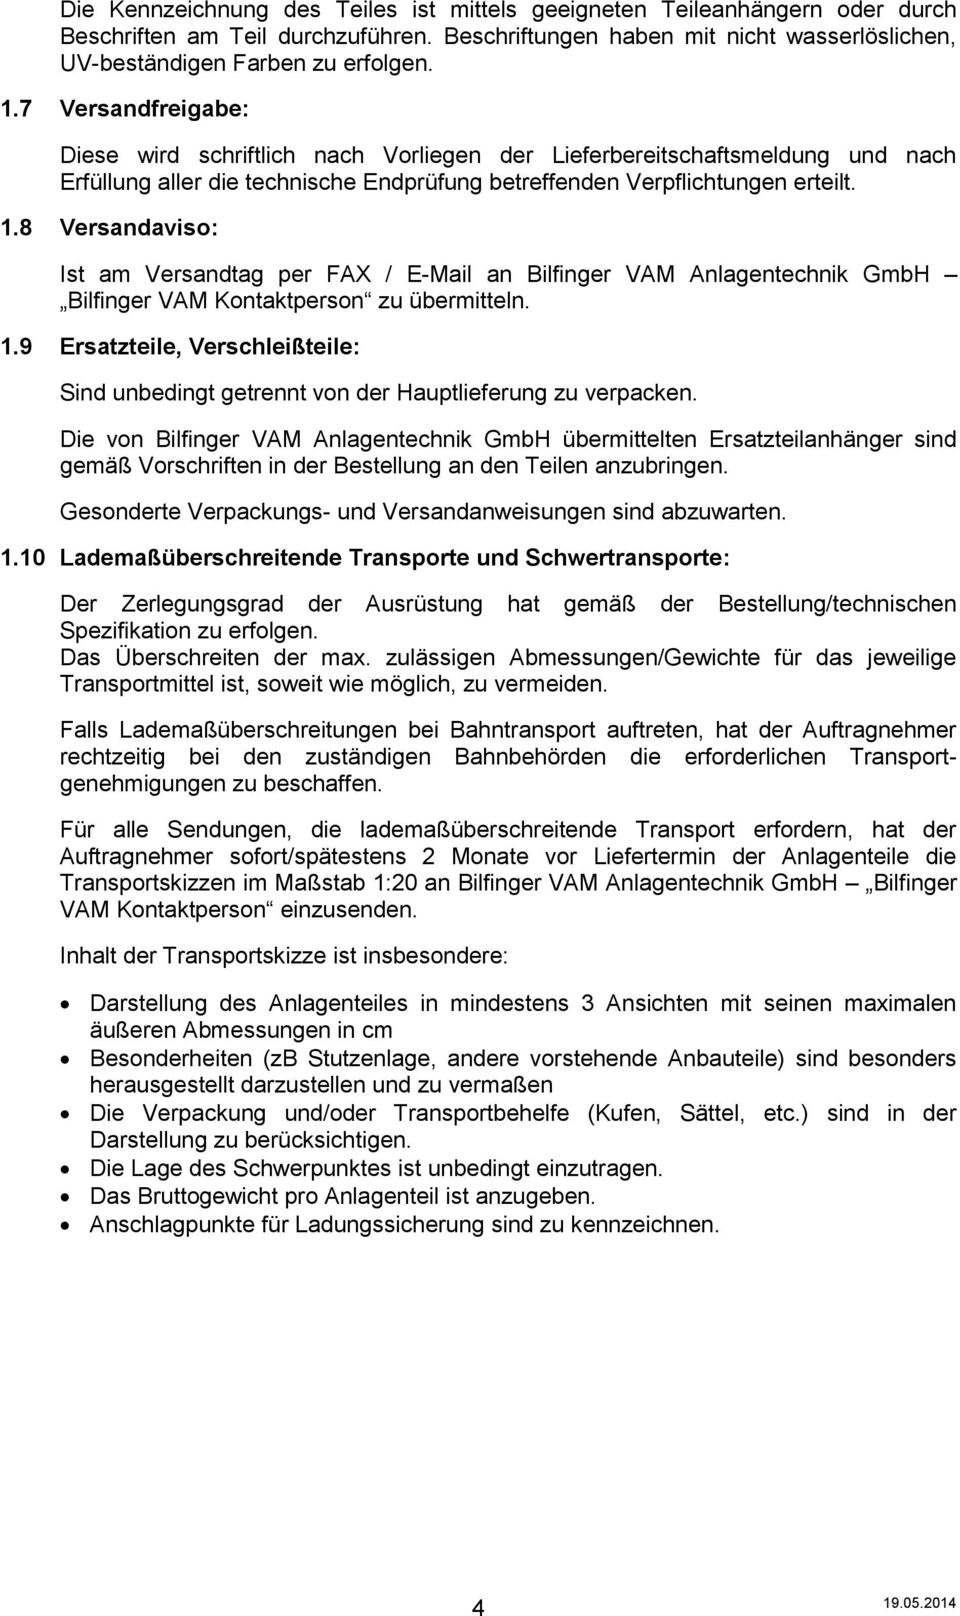 8 Versandaviso: Ist am Versandtag per FAX / E-Mail an Bilfinger VAM Anlagentechnik GmbH Bilfinger VAM Kontaktperson zu übermitteln. 1.